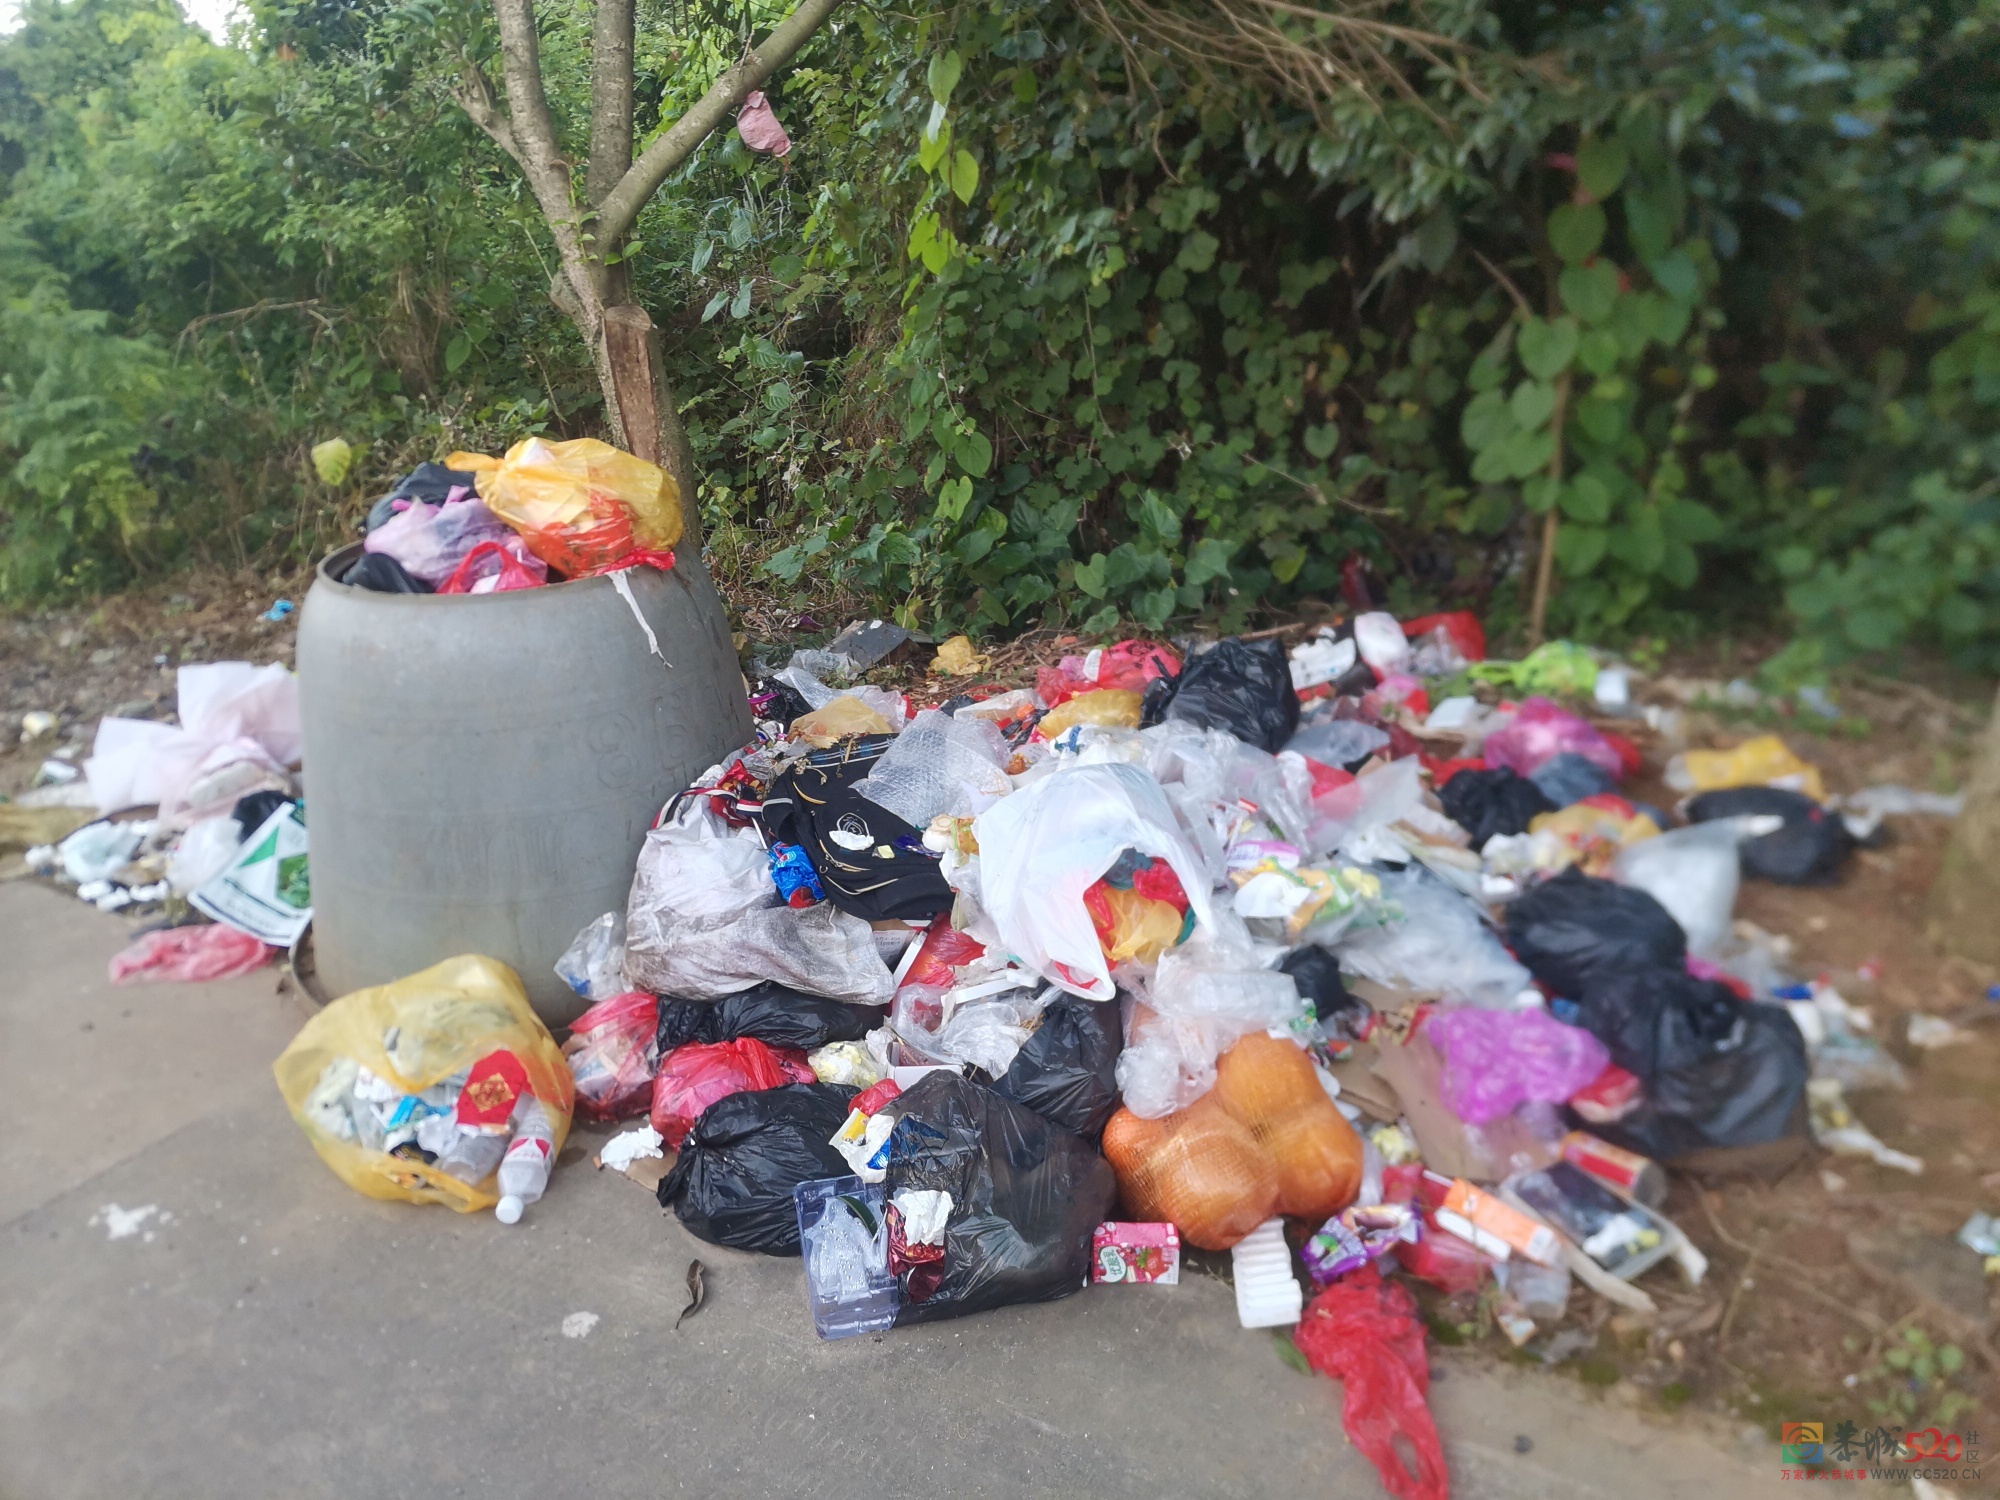 西岭镇周边街道的垃圾好多天没处理了487 / 作者:baby甜心 / 帖子ID:285956